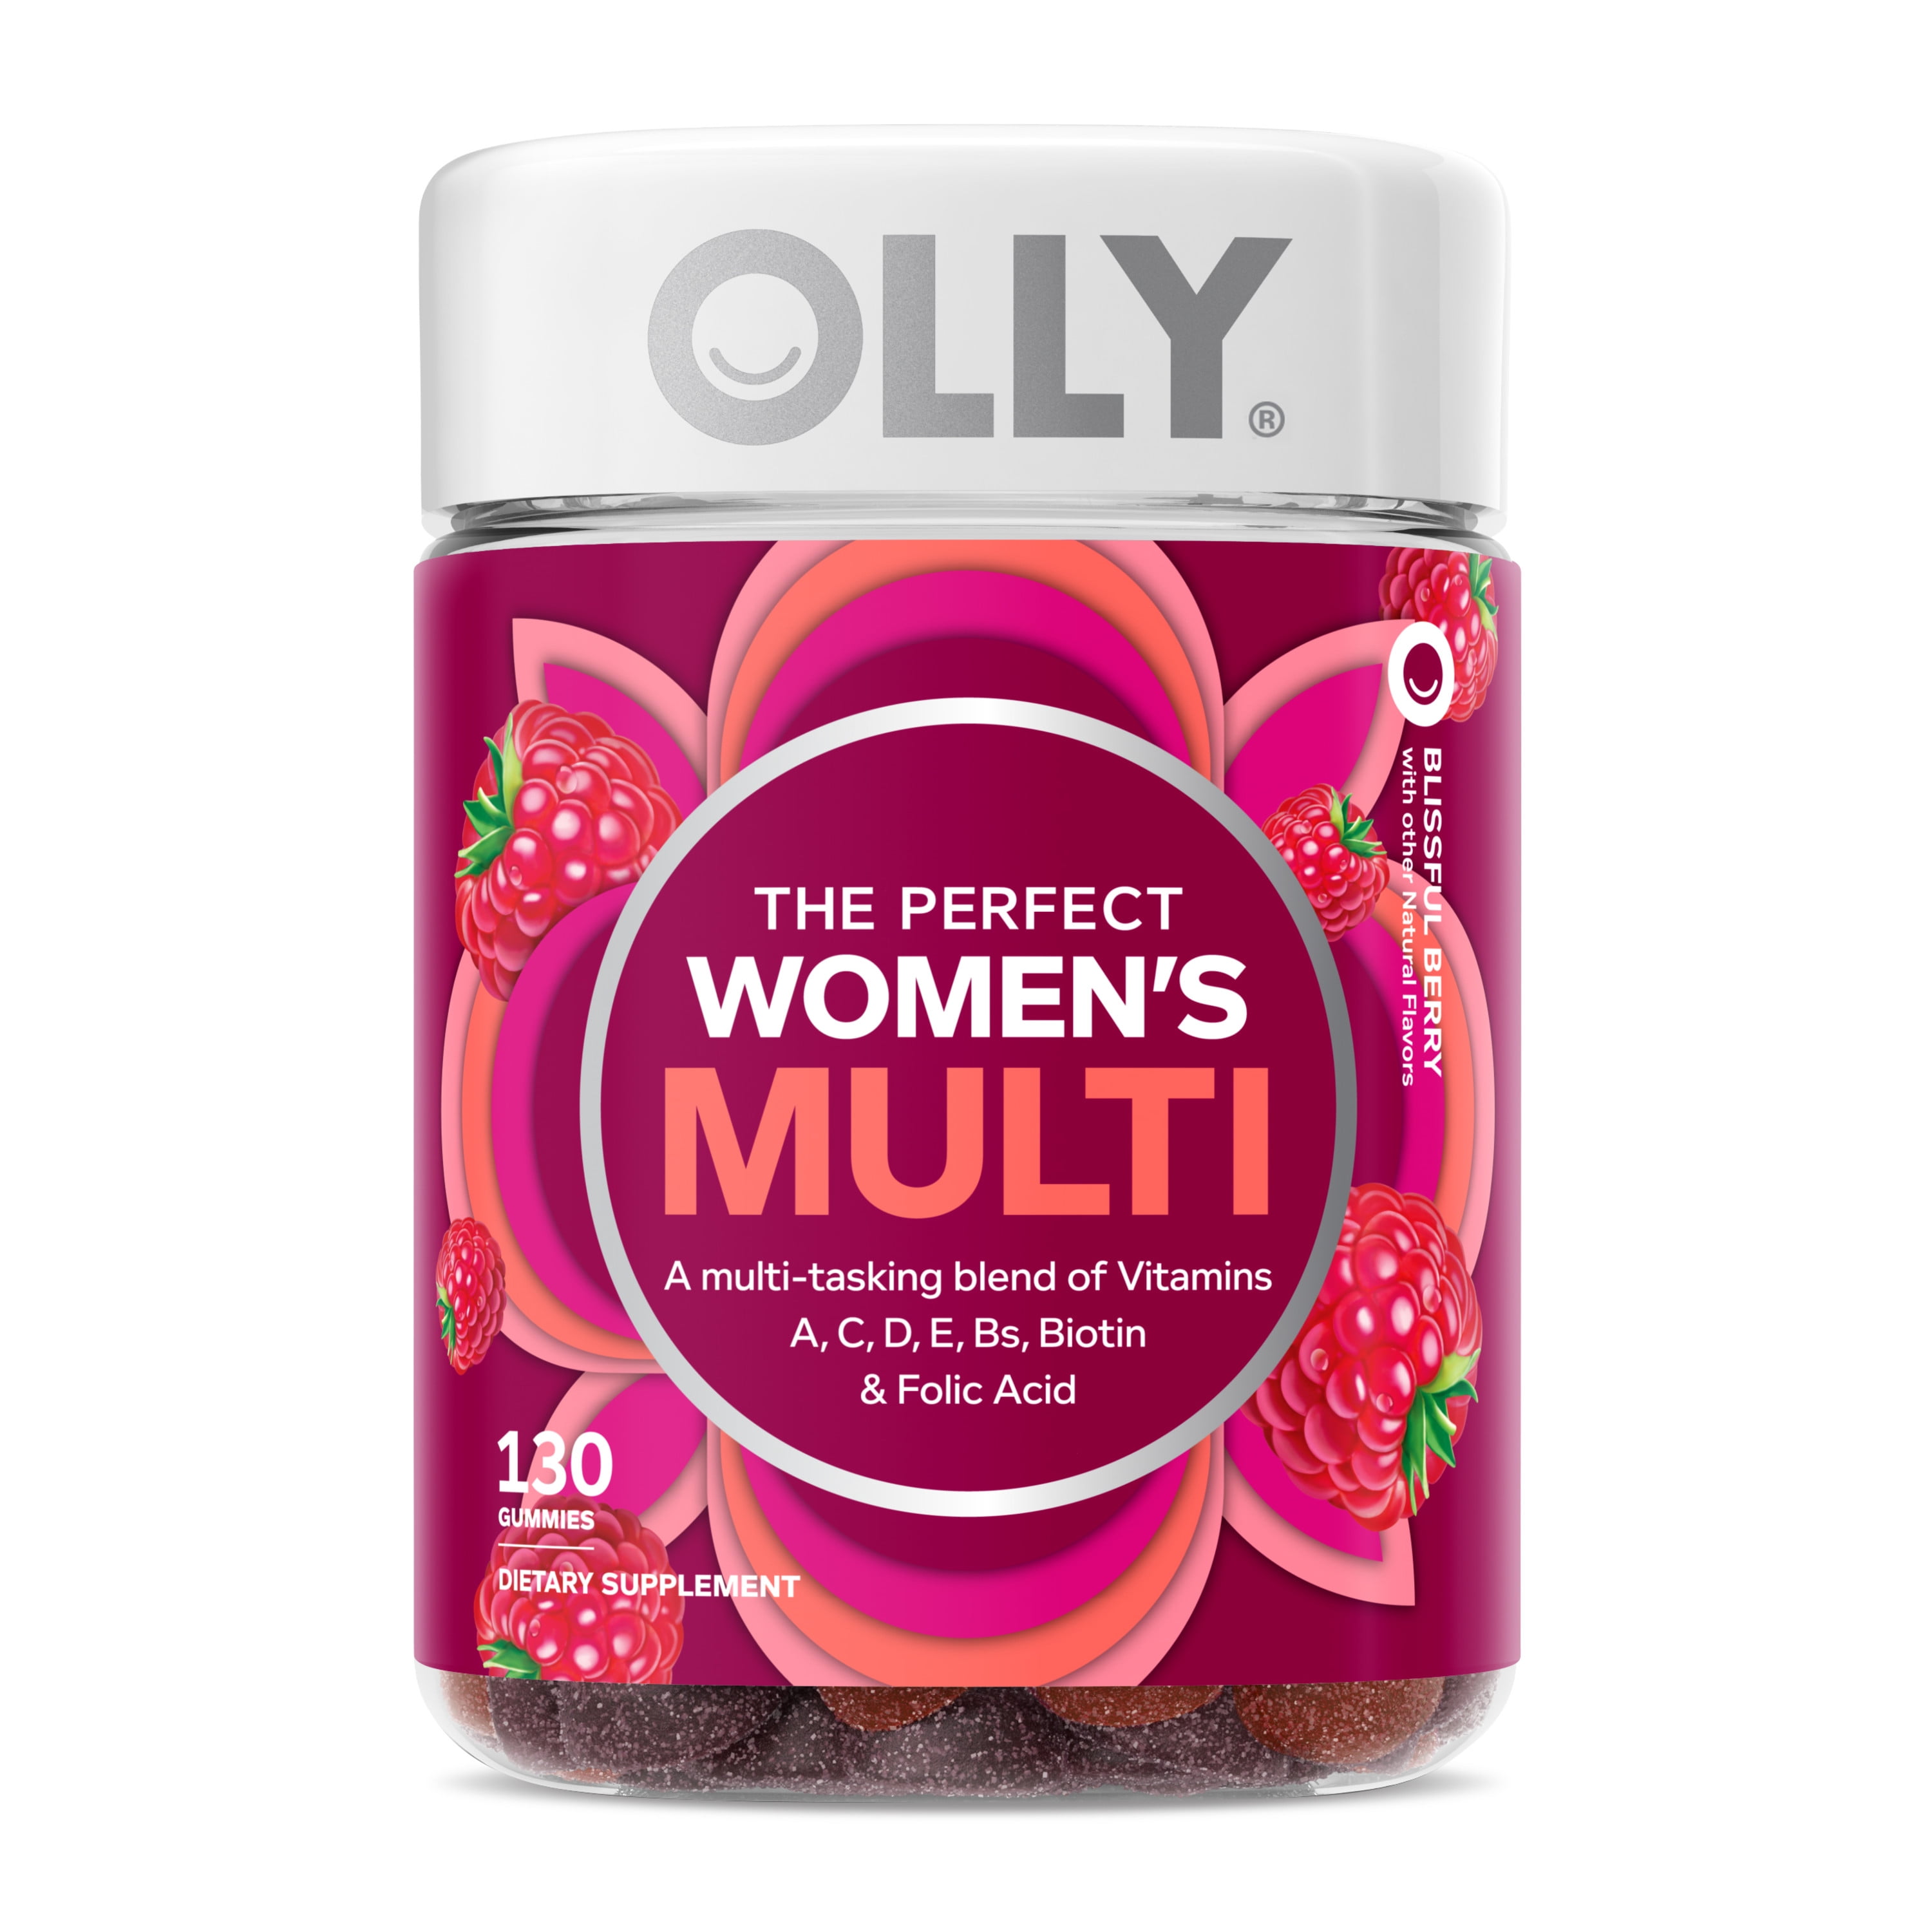 OLLY Women's Multivitamin Gummy, Health & Immune Supplement, Vitamin Blend, Berry, 130 Ct